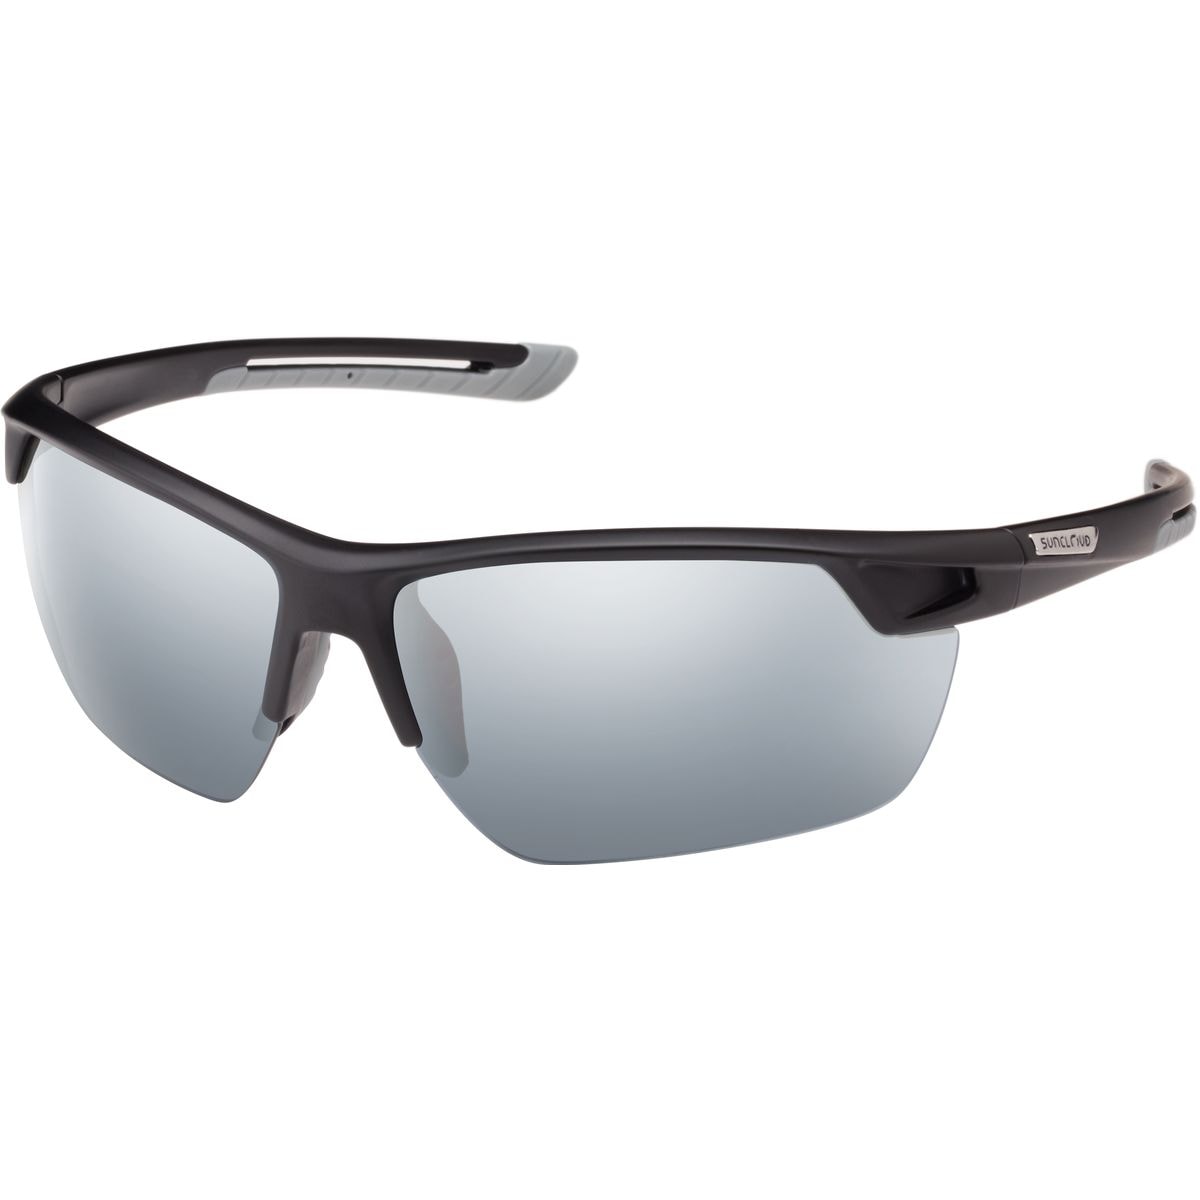 Поляризованные солнцезащитные очки contender Suncloud Polarized Optics, цвет matte black/silver mirror очки солнцезащитные stylemark polarized l1475c